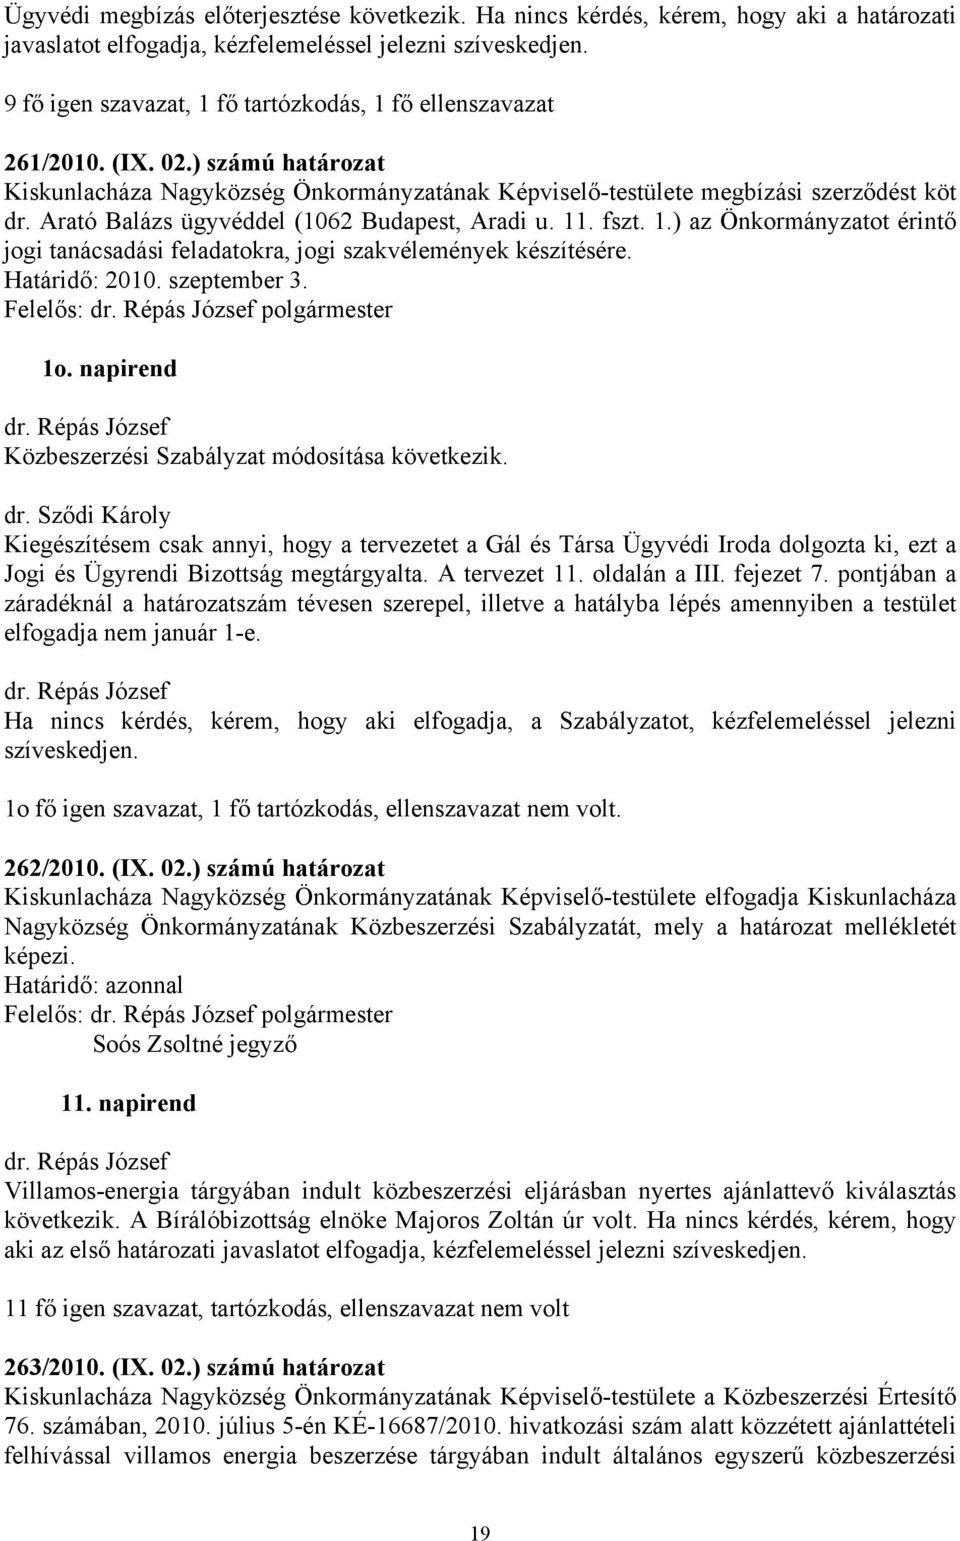 ) számú határozat Kiskunlacháza Nagyközség Önkormányzatának Képviselő-testülete megbízási szerződést köt dr. Arató Balázs ügyvéddel (1062 Budapest, Aradi u. 11